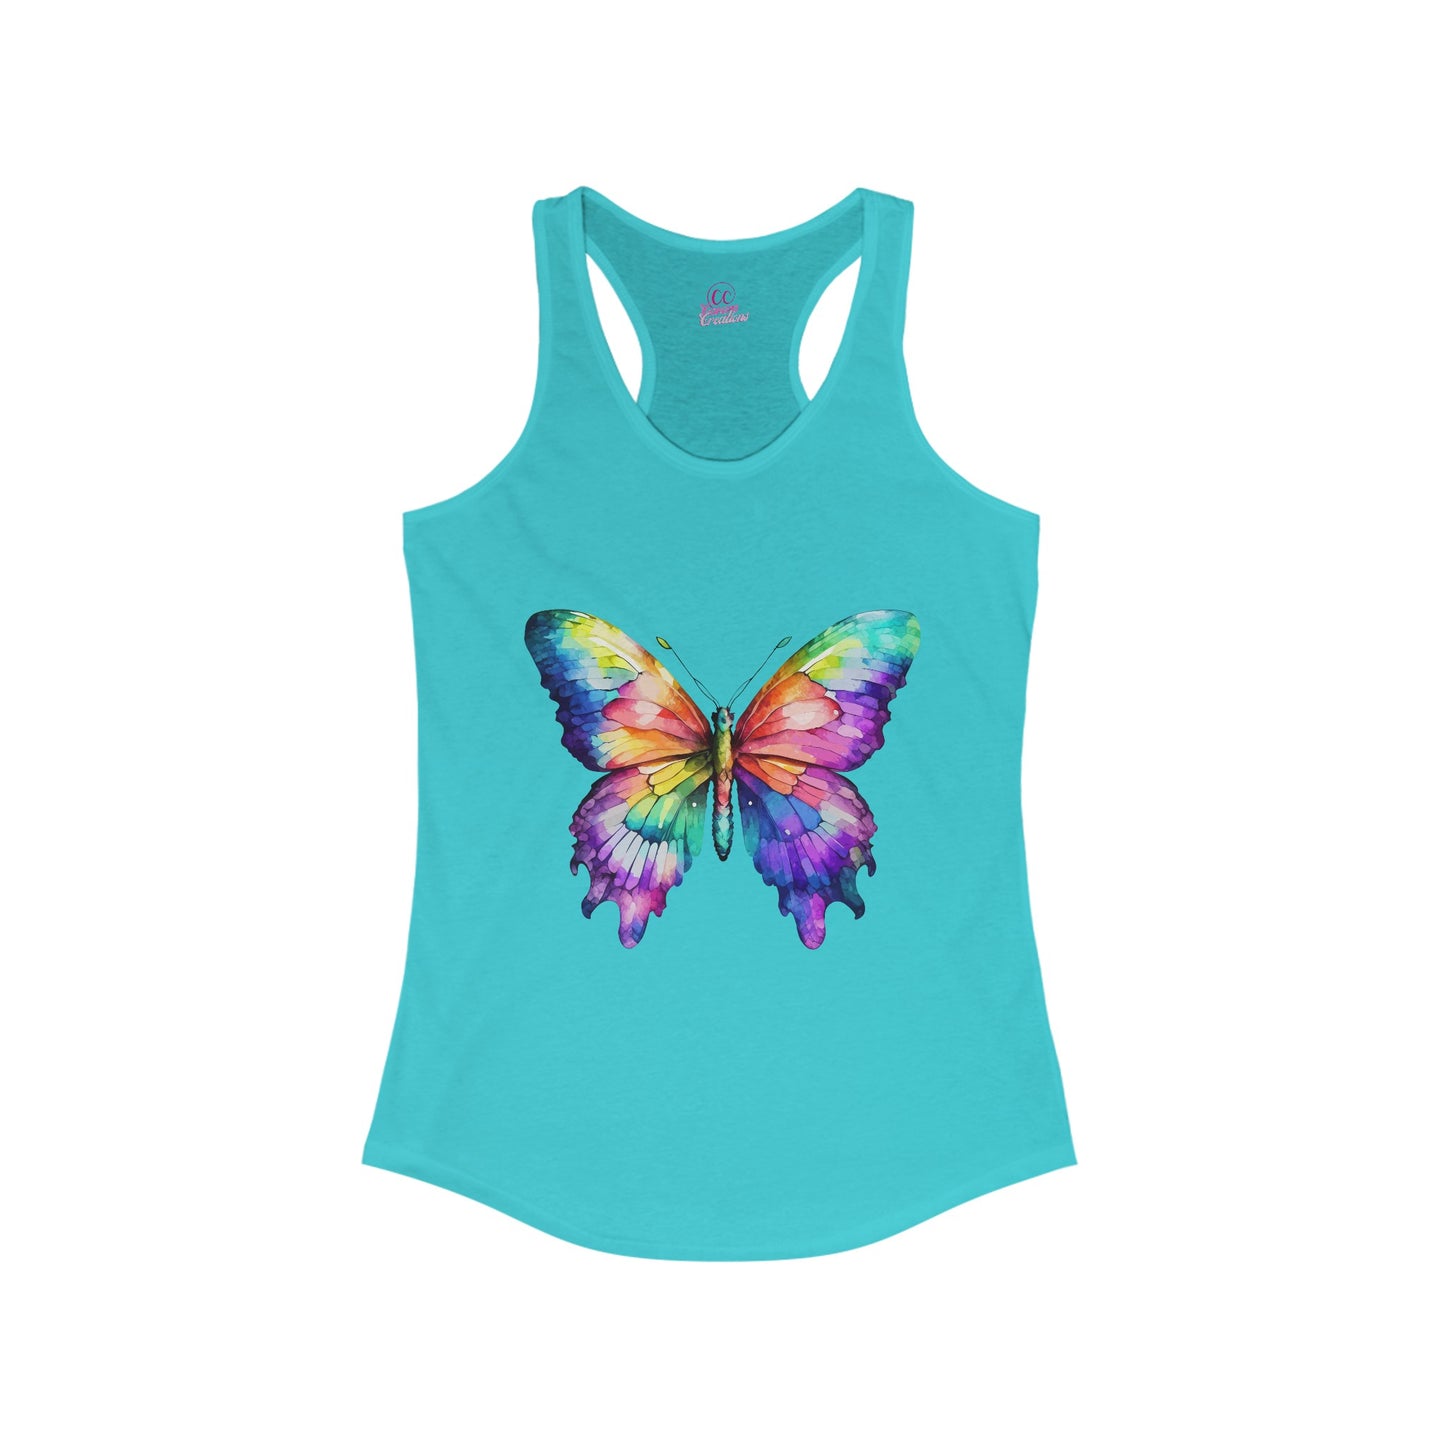 Watercolor Butterfly Women's Racerback Slim Fit Tank Top Sizes xs-2xl